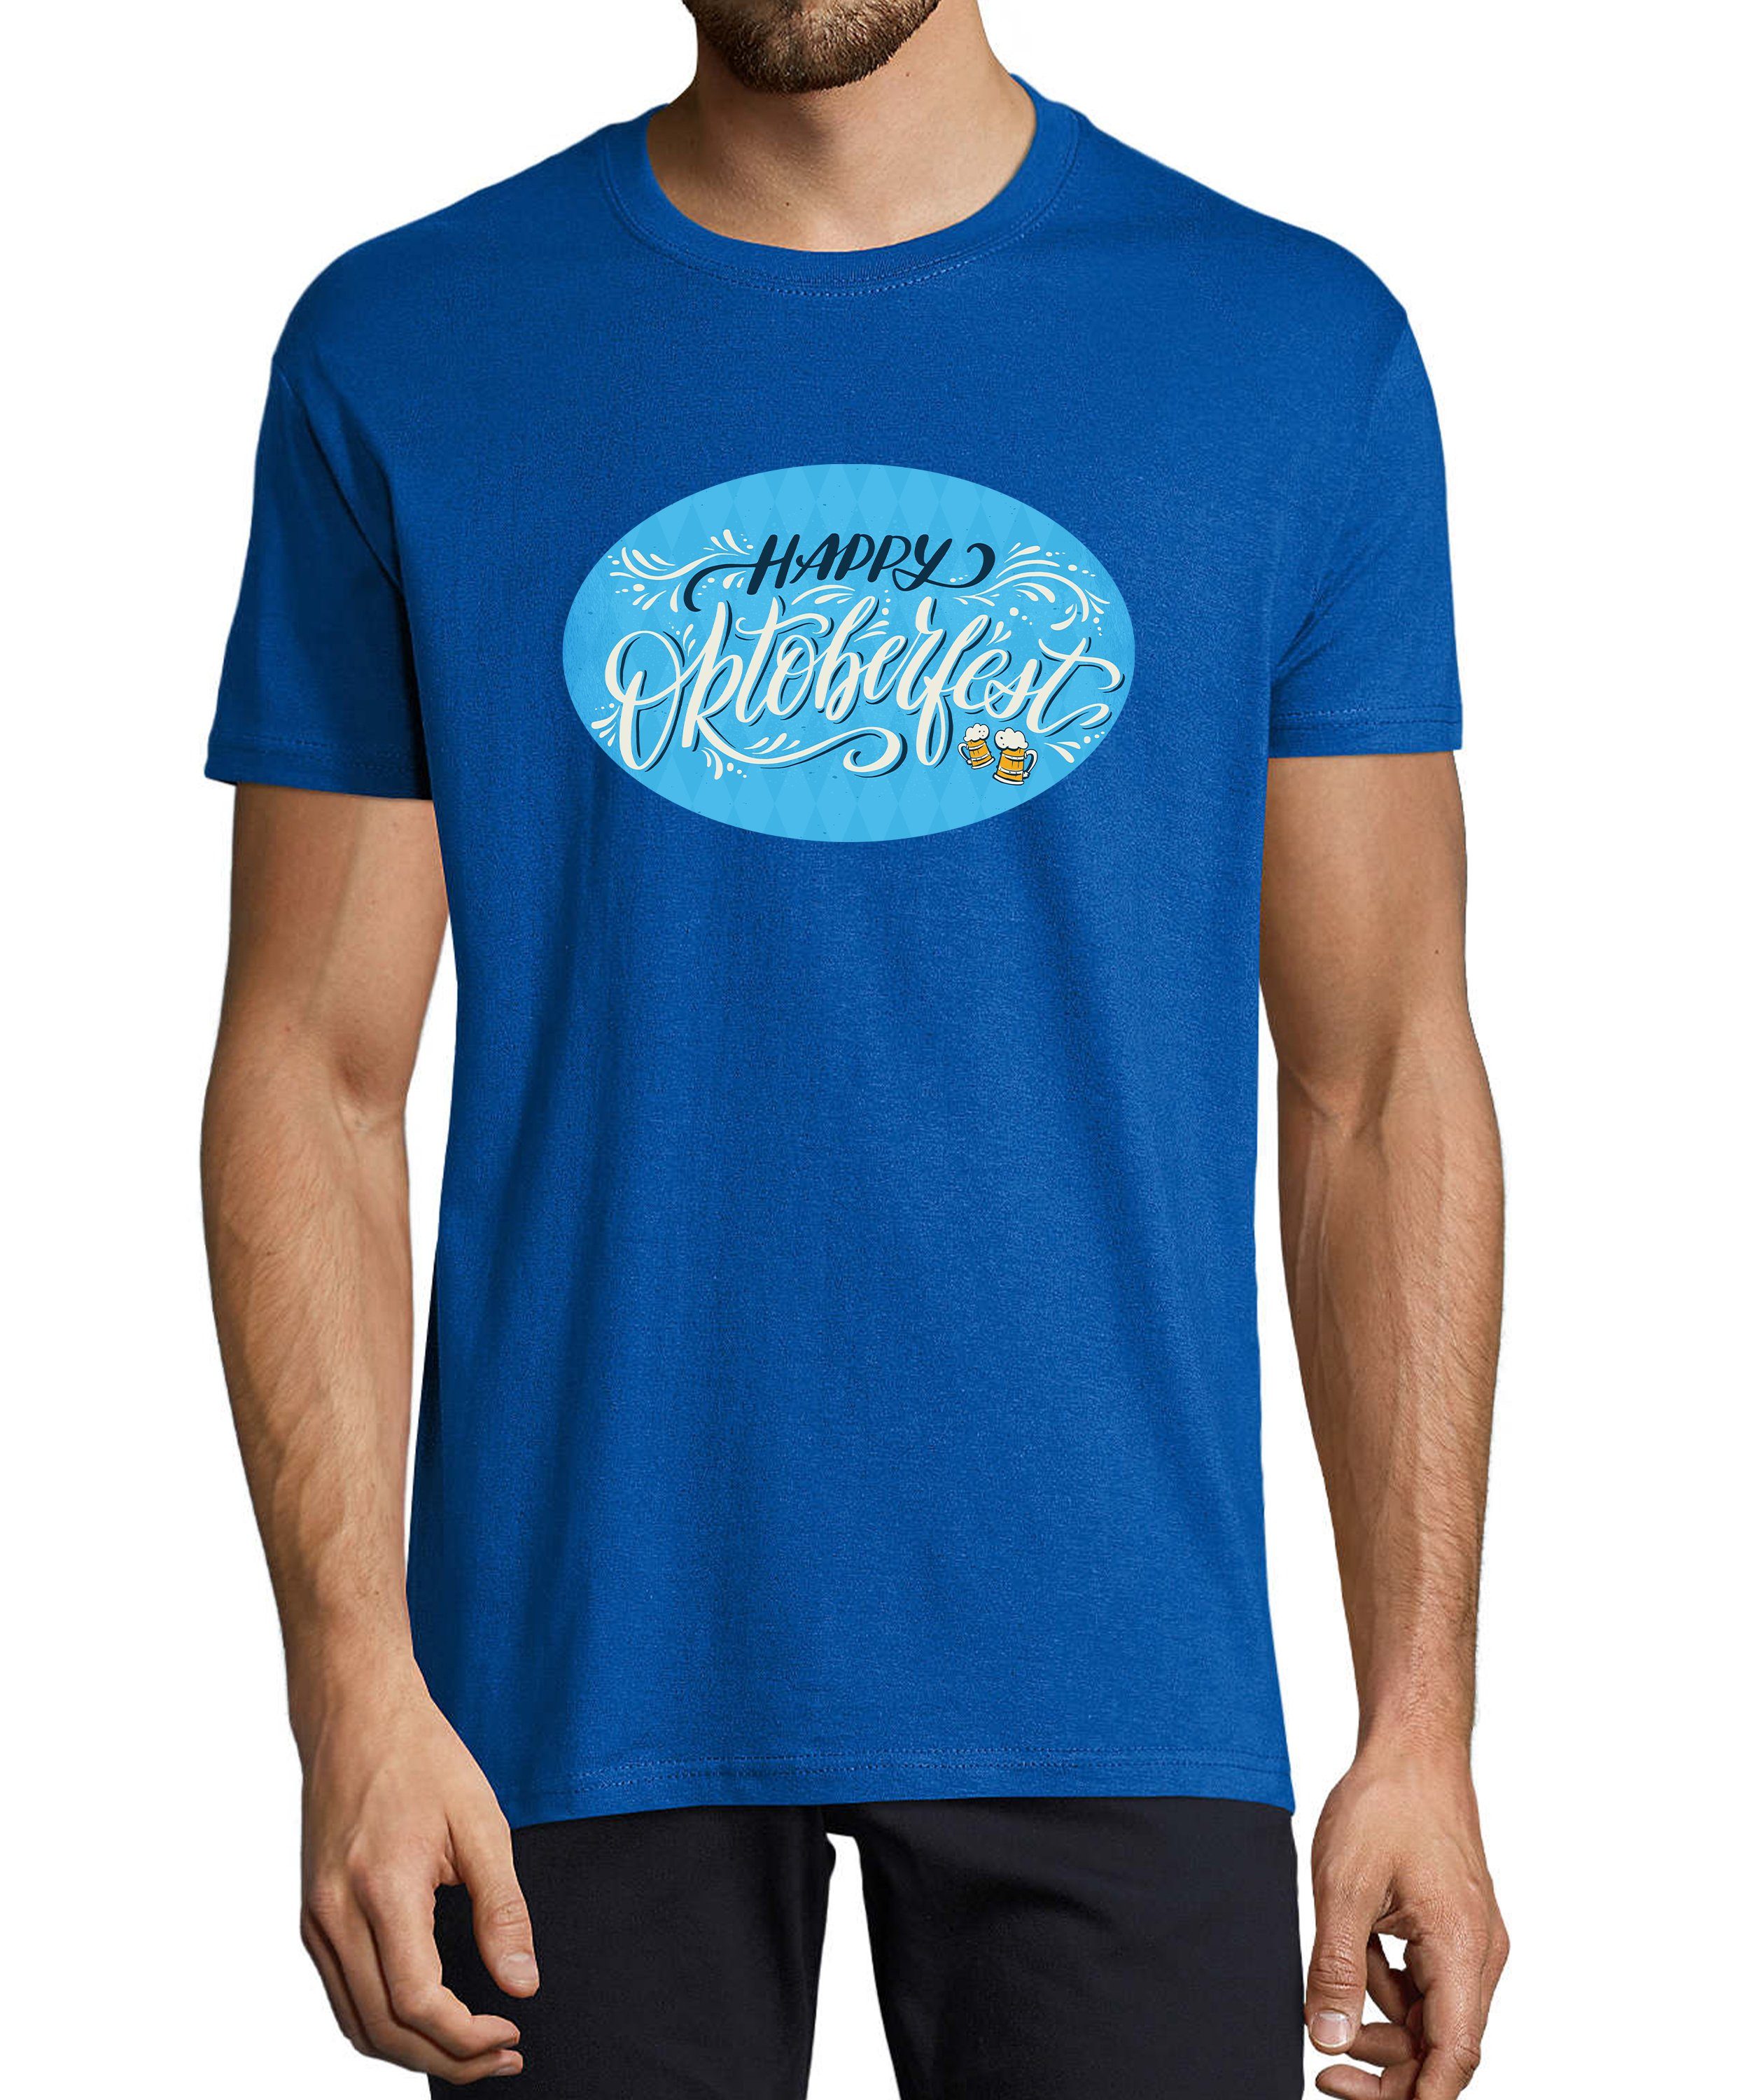 MyDesign24 T-Shirt Herren Party Shirt - Trinkshirt Oktoberfest T-Shirt Baumwollshirt mit Aufdruck Regular Fit, i322 royal blau